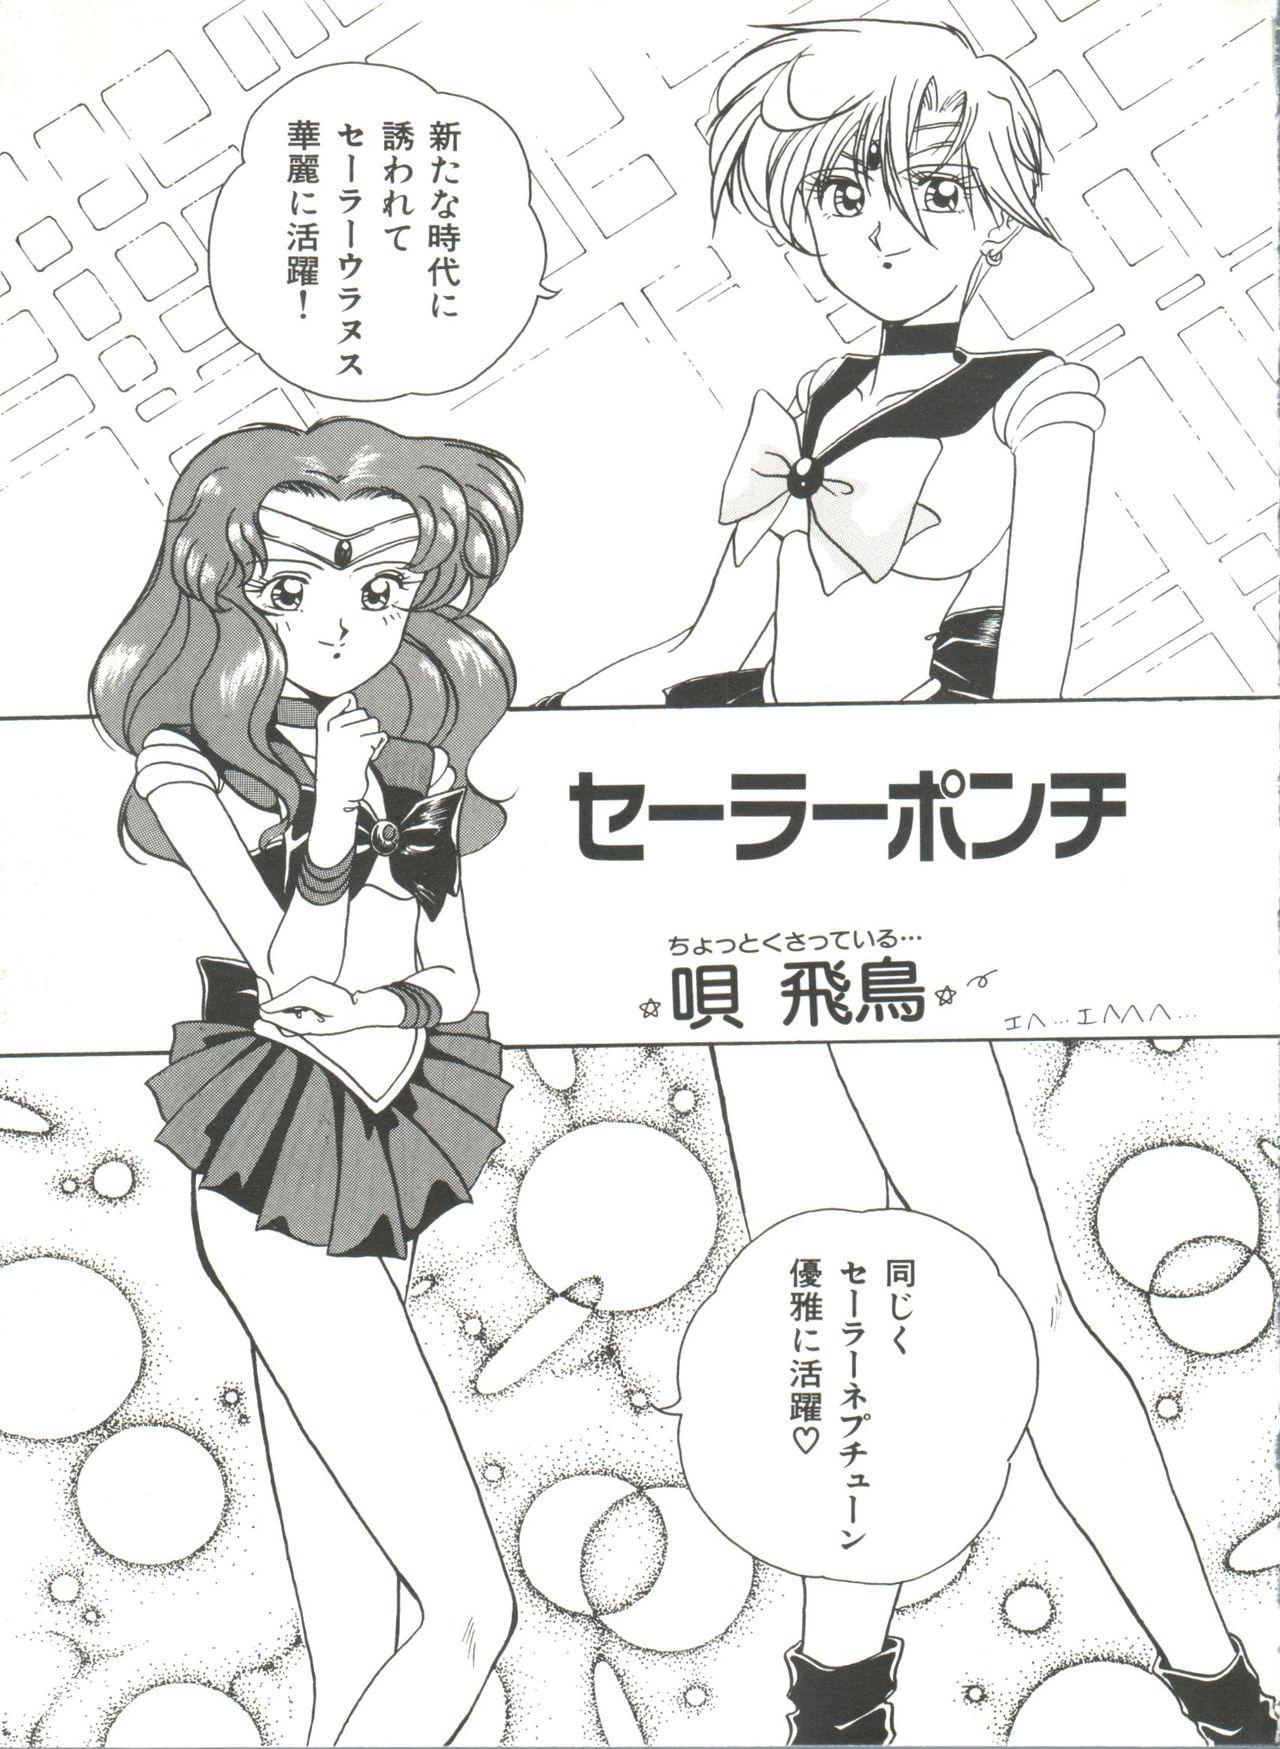 Bishoujo Doujinshi Anthology 8 - Moon Paradise 5 Tsuki no Rakuen 43